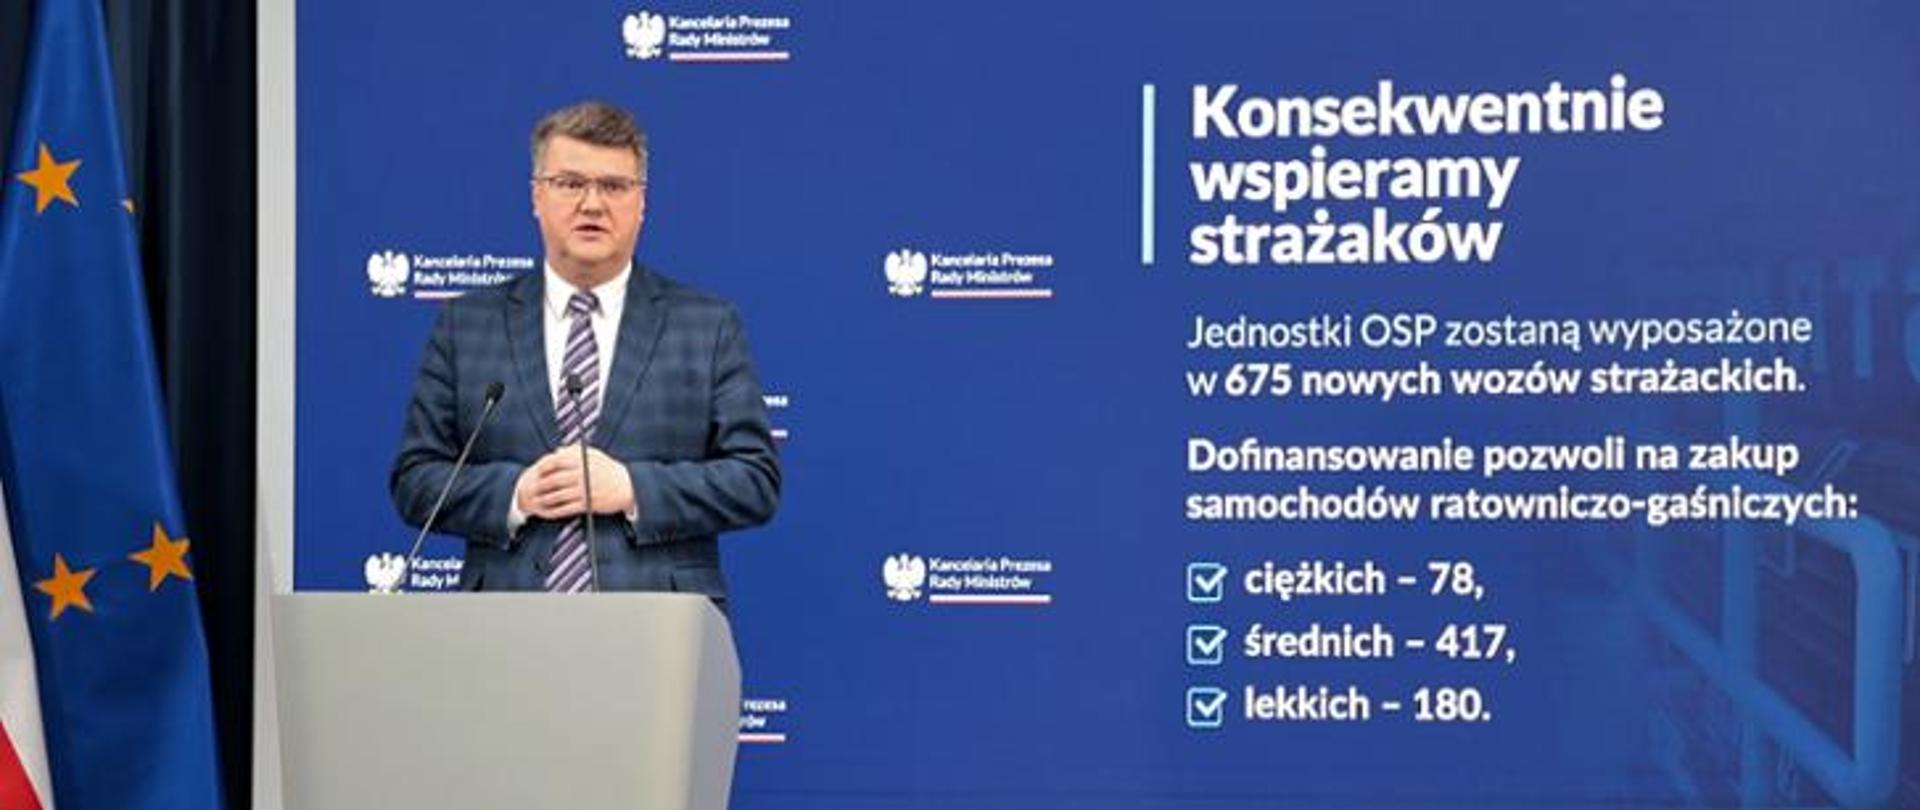 Wiceminister MSWiA Maciej Wąsik w trakcie ogłaszania programu wsparcia na zakup samochodów dla OSP.